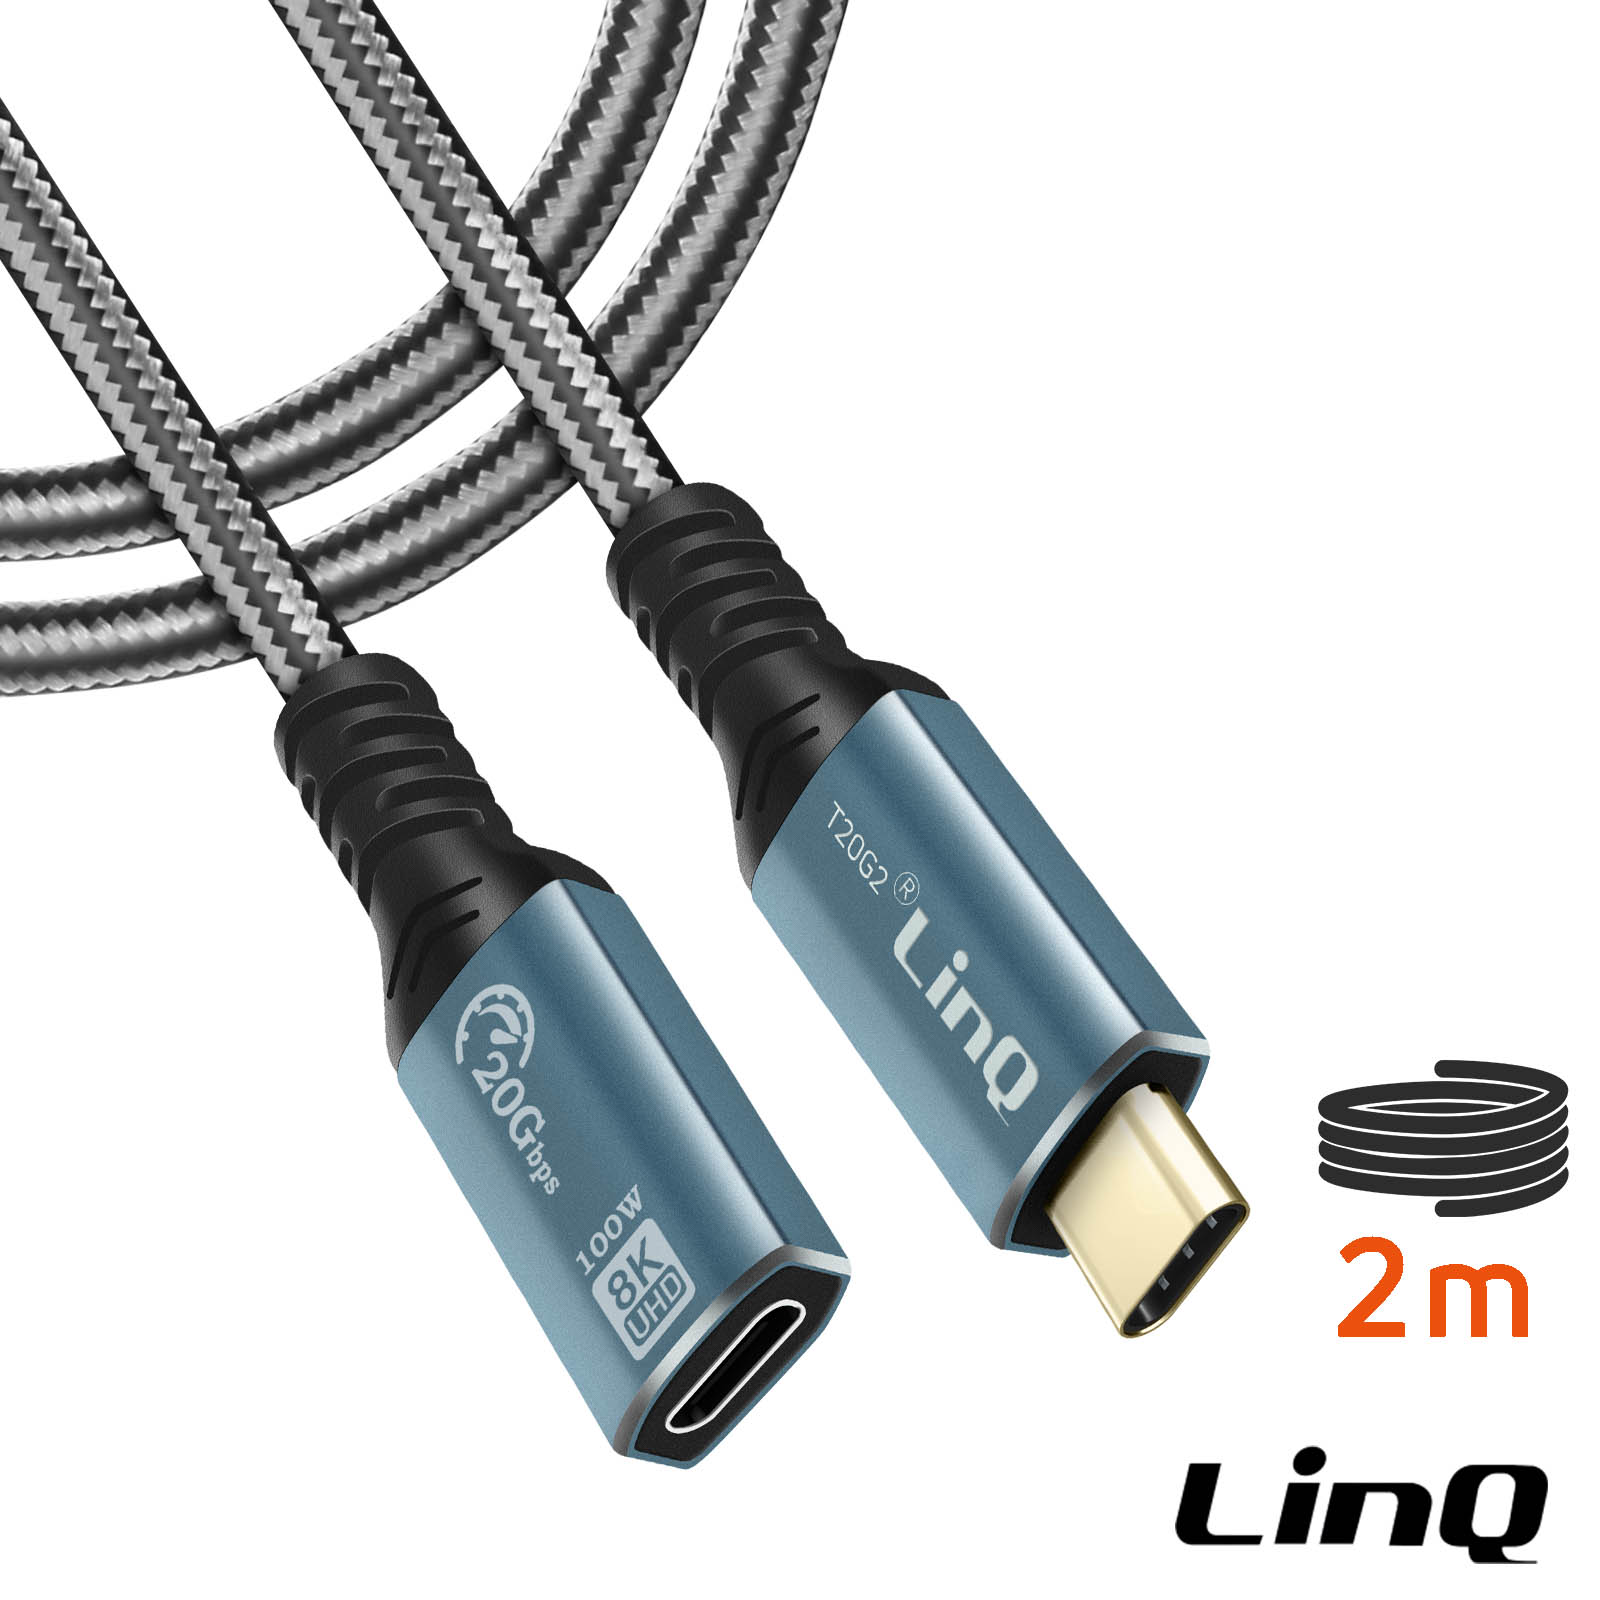 Prolunga USB-C 2 metri, ricarica 100W risoluzione 8K trasferimento 20Gbps -  LinQ - Italiano